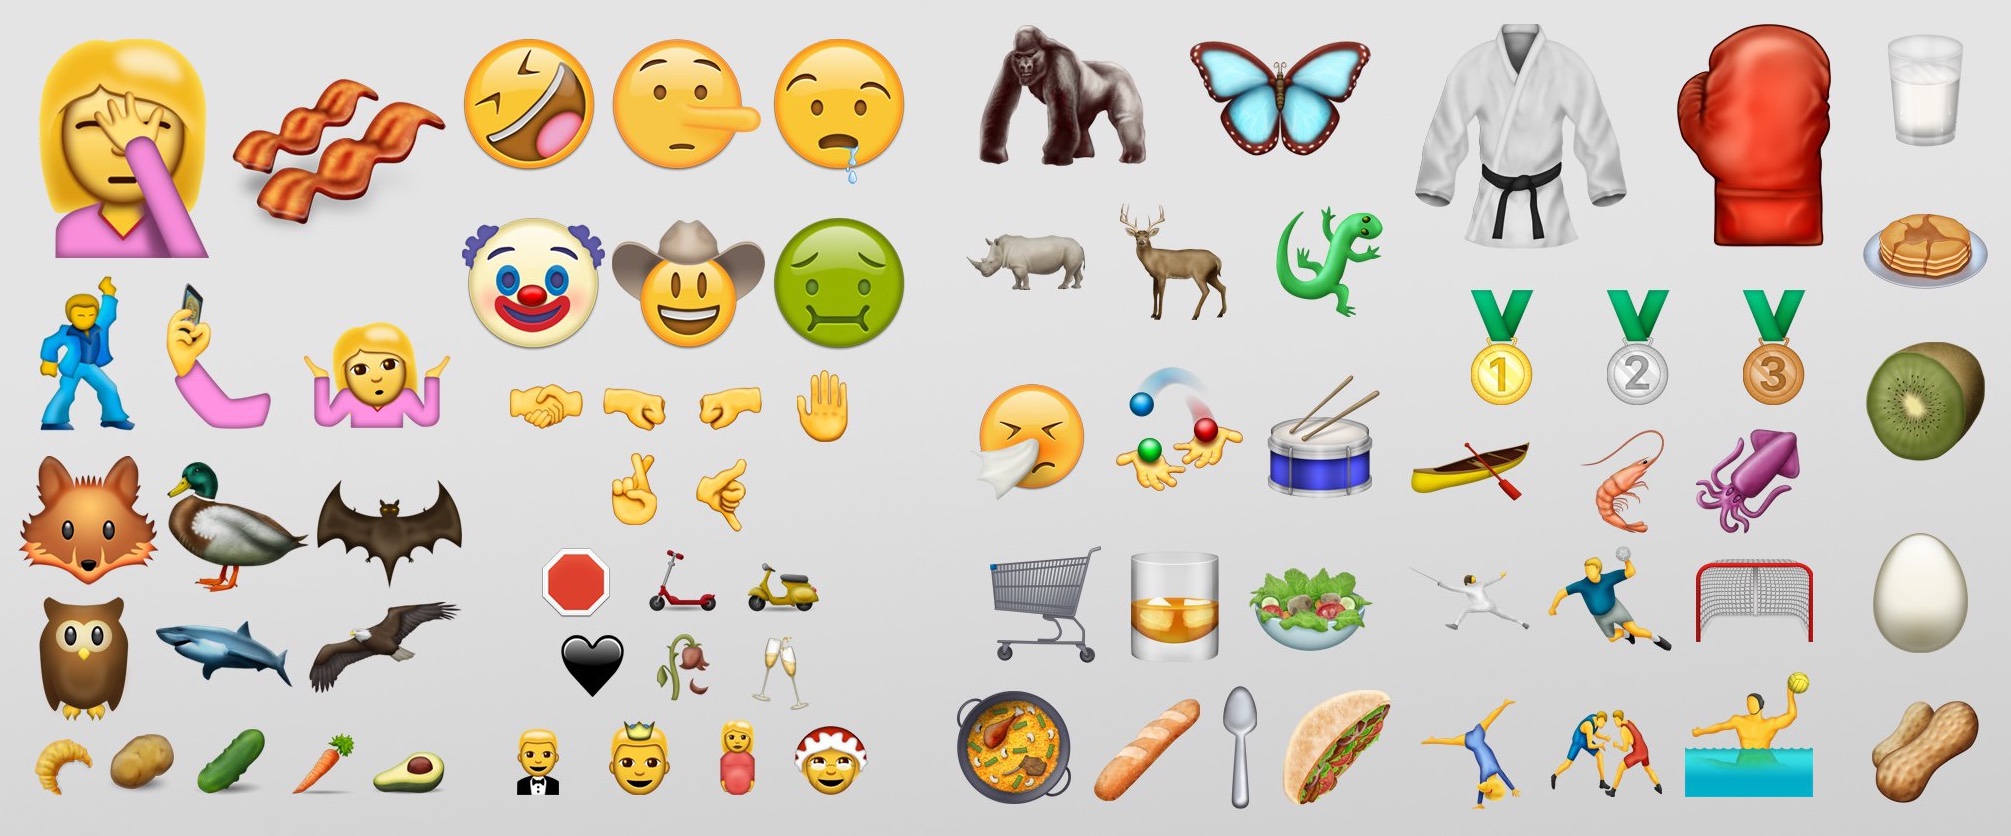 Unicode 9 emoji image 001